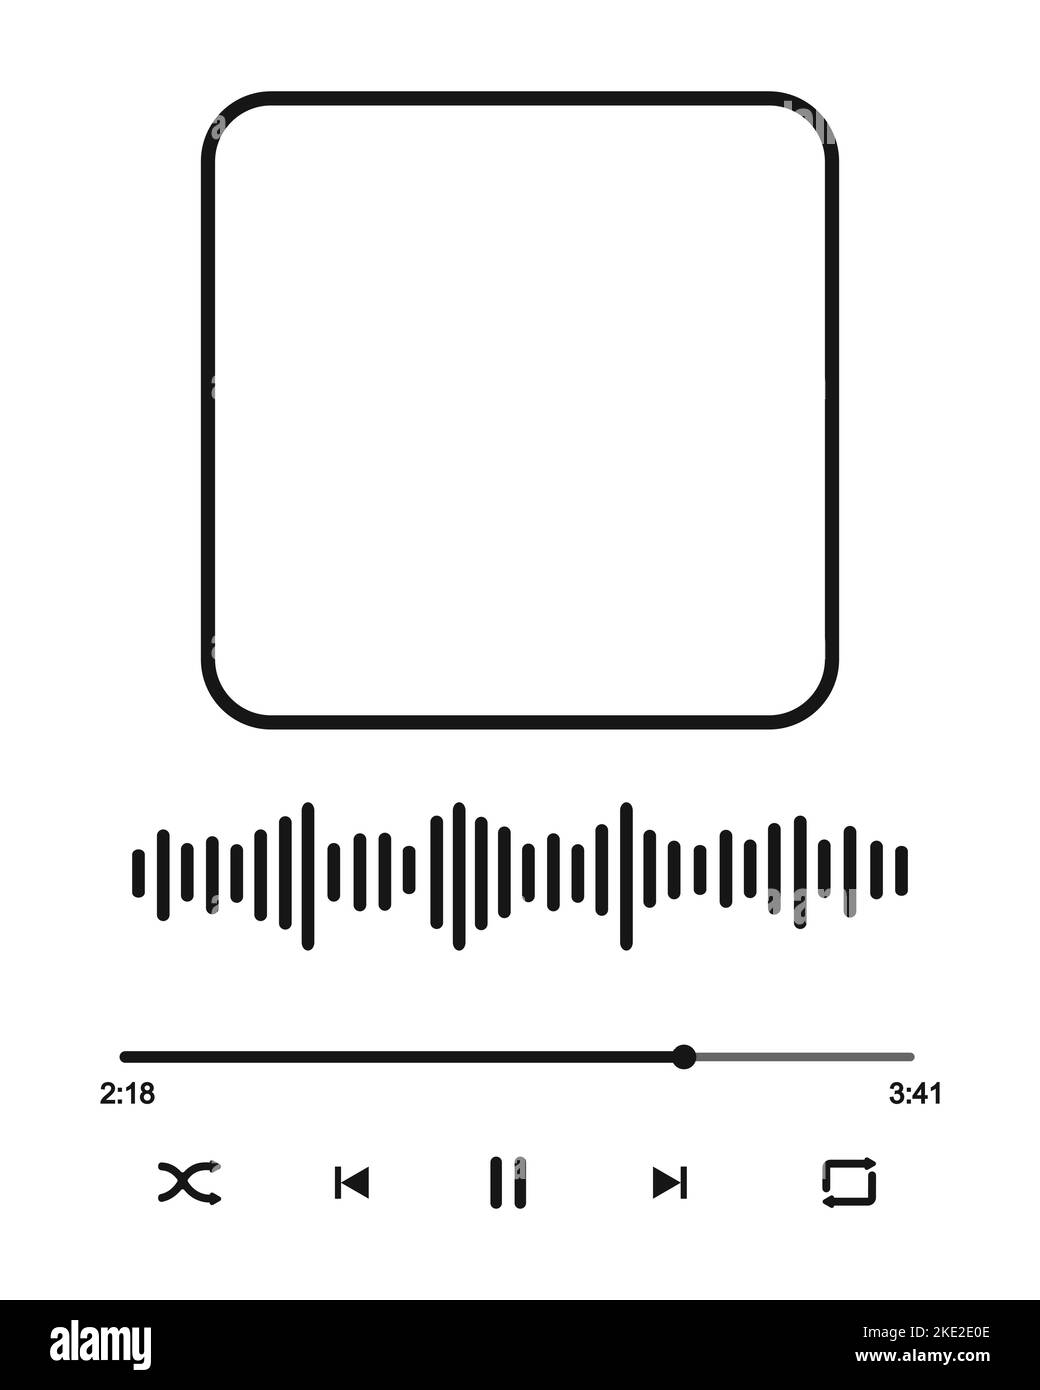 Ilustración de Conjunto De Ecualizador De Onda De Música Vectorial  Elementos De La Interfaz De Usuario Del Reproductor De Audio y más Vectores  Libres de Derechos de Música - iStock